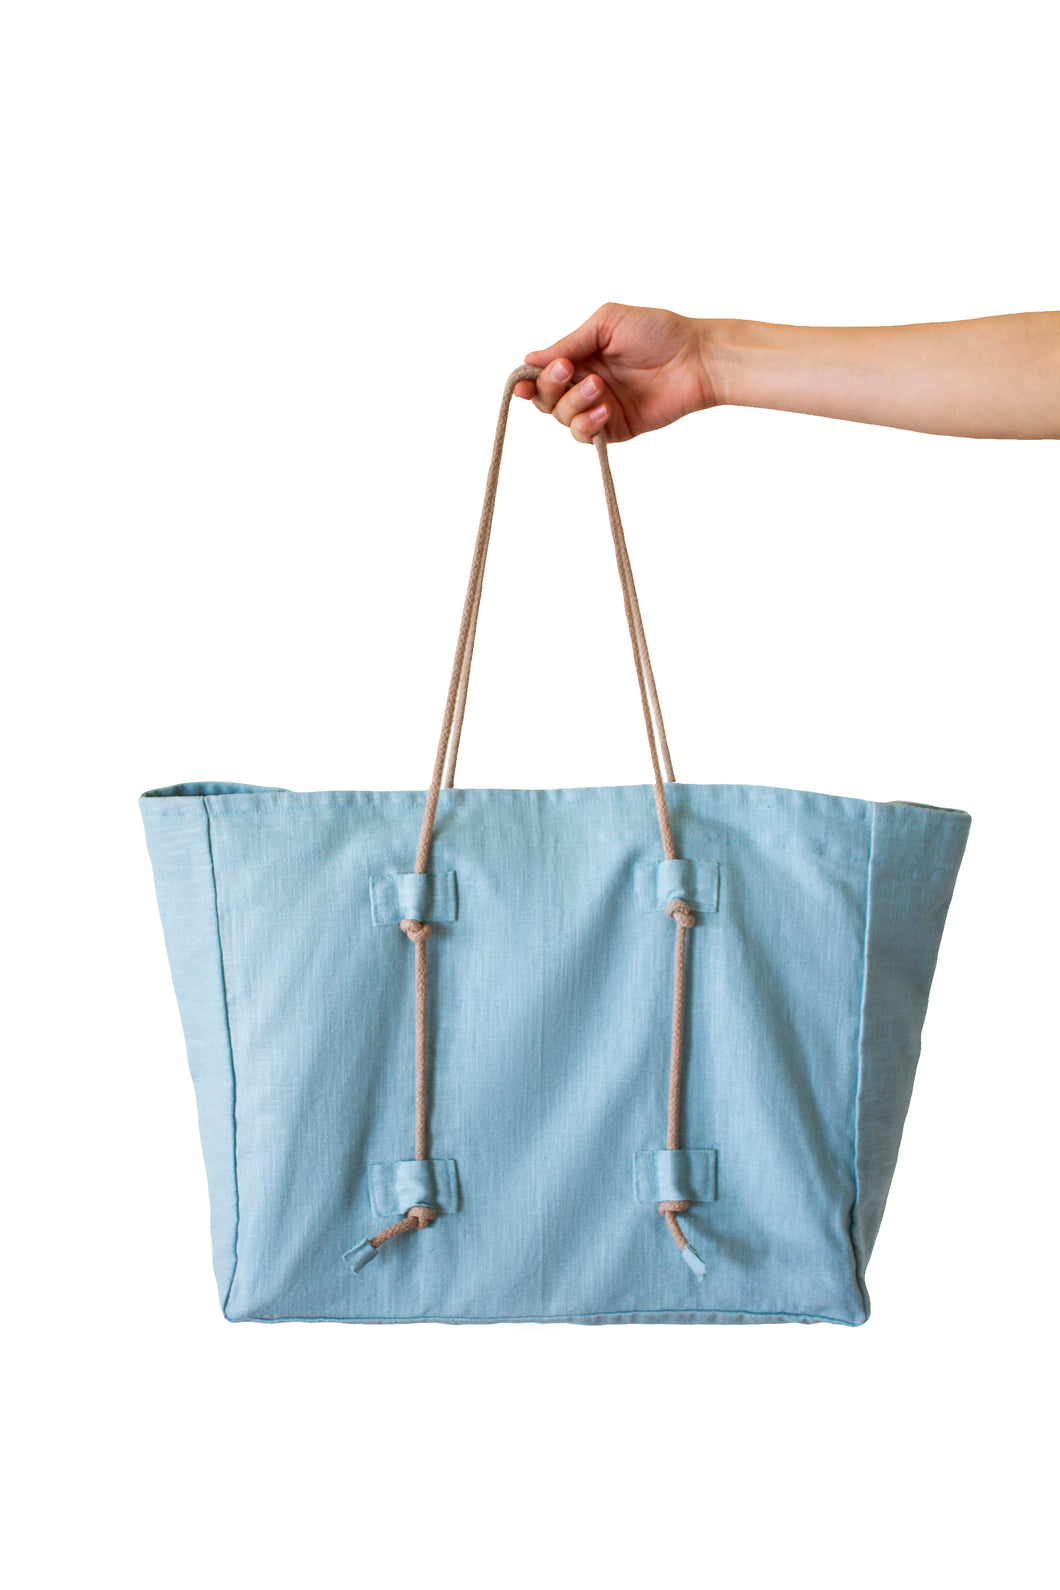 Tote bag / Nile blue